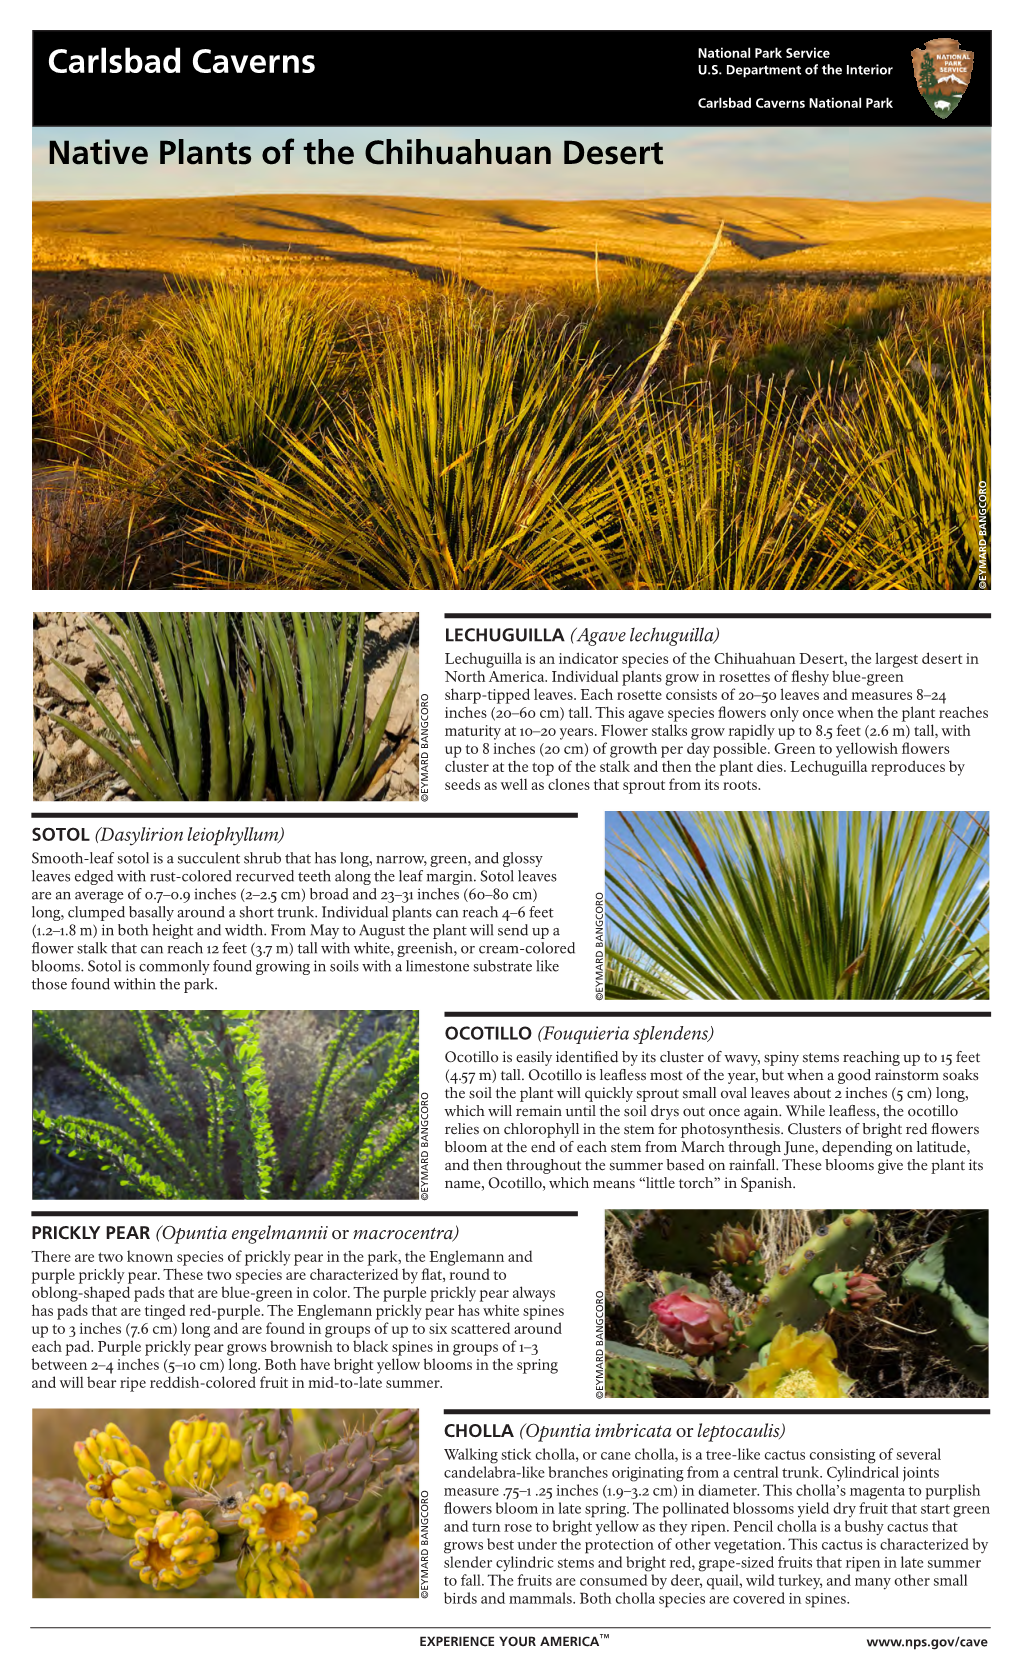 Native Plants of the Chihuahuan Desert ©EYMARD BANGCORO